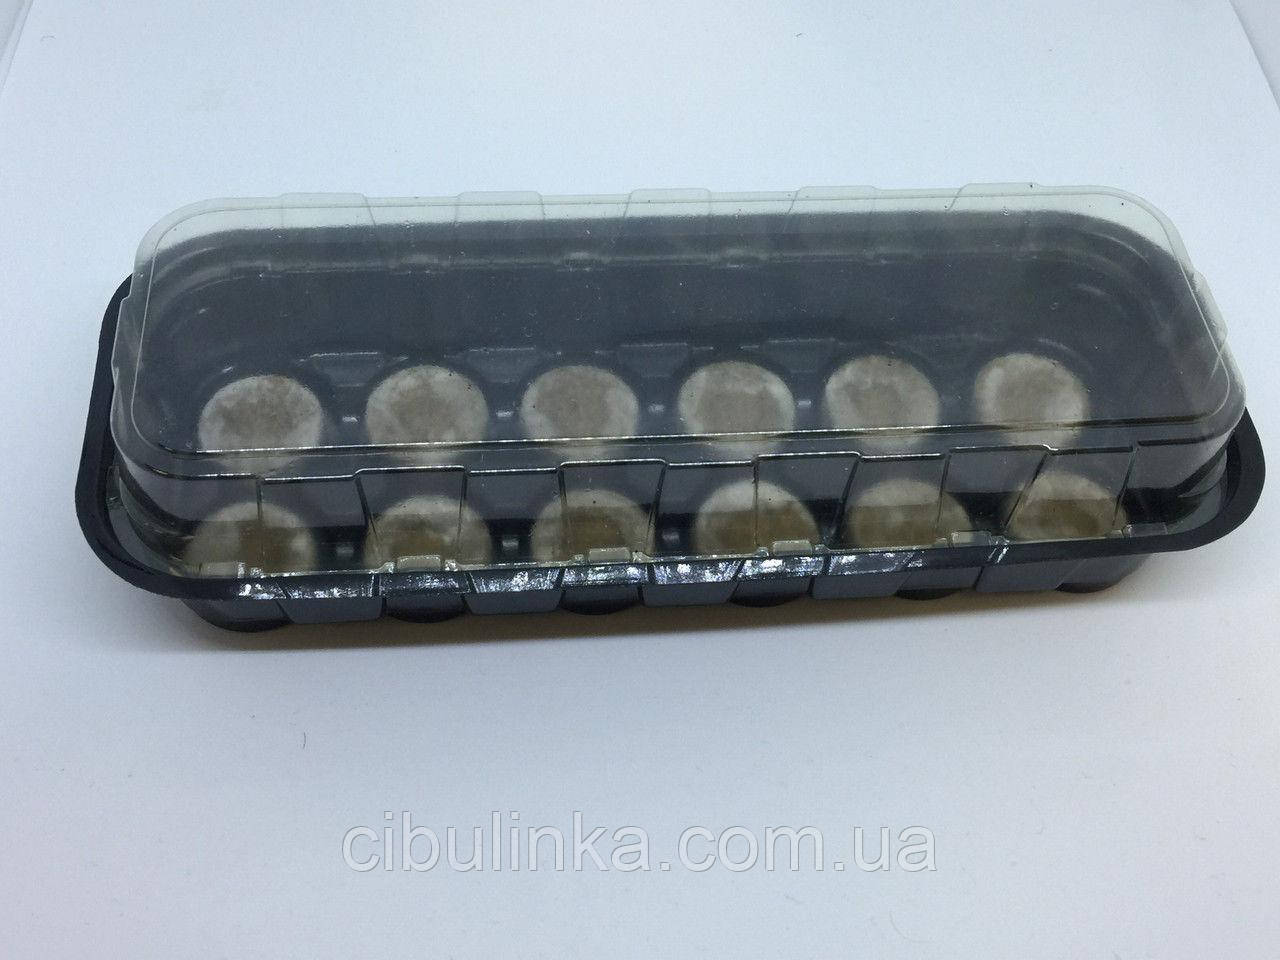 Мініплівка на 12 торф'яних таблеток, діам.35 мм.